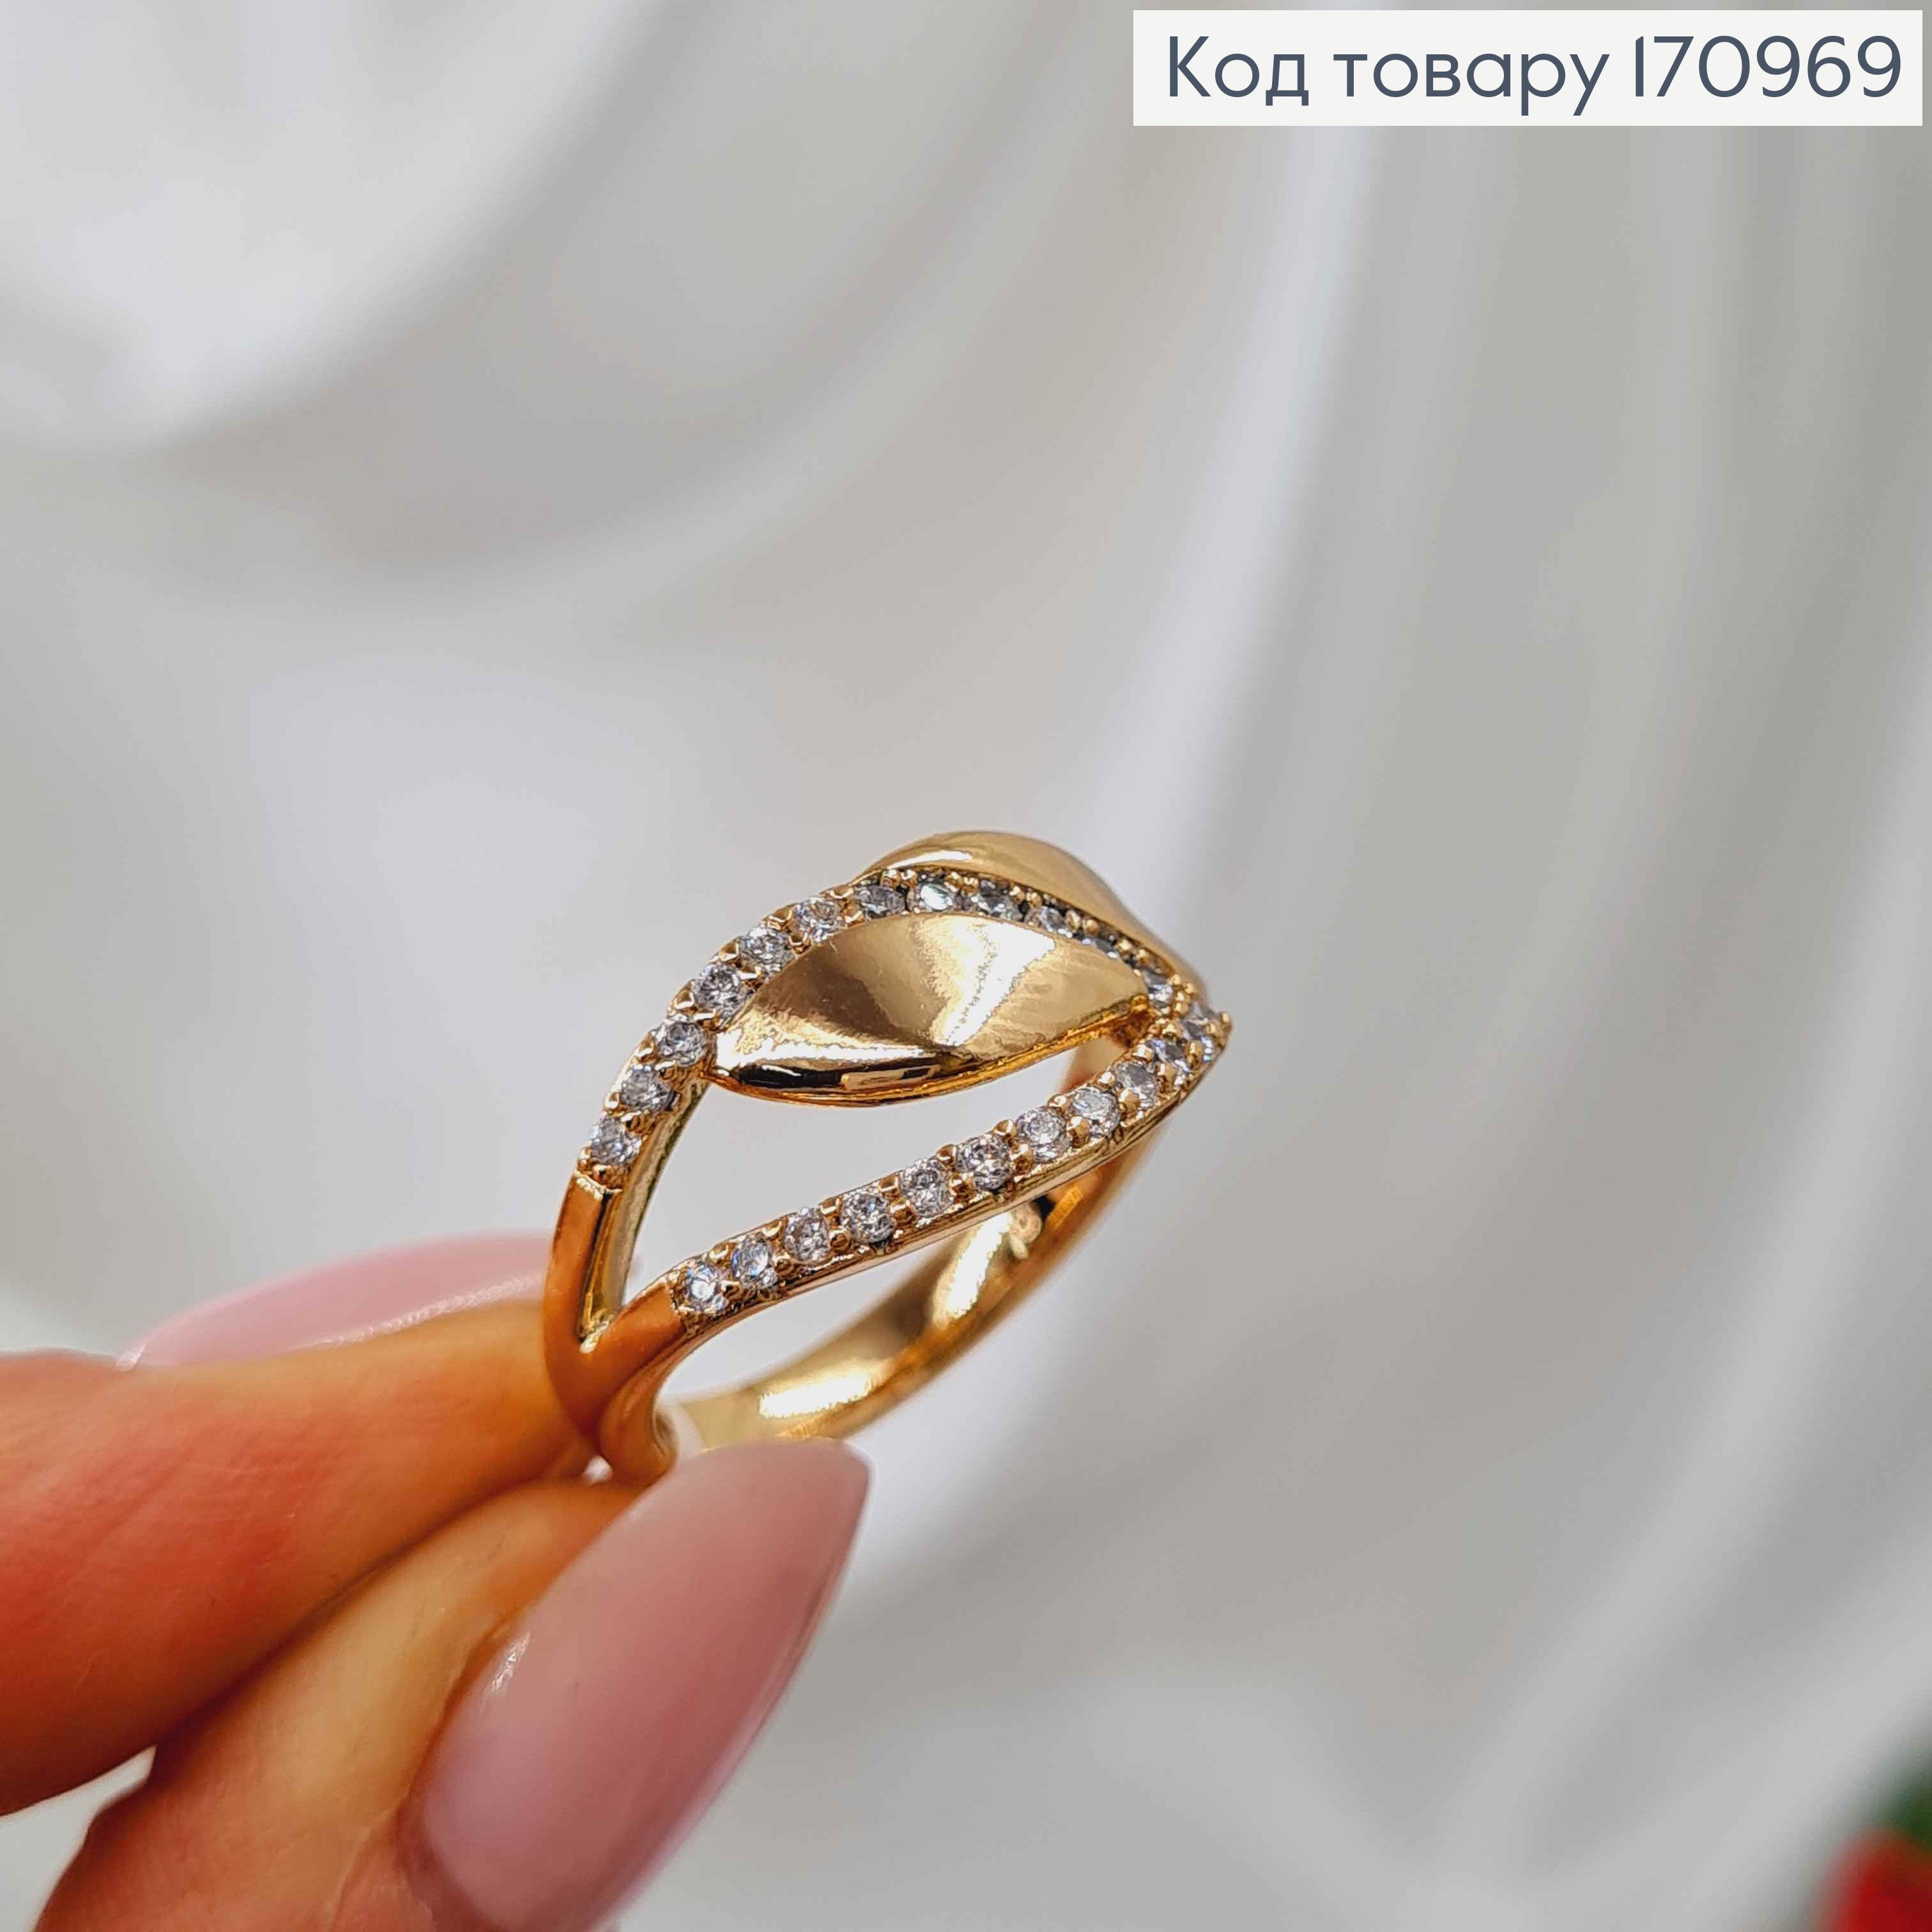 Кольцо, листик в камнях, с пластинкой, Xuping 18К 170969 фото 3